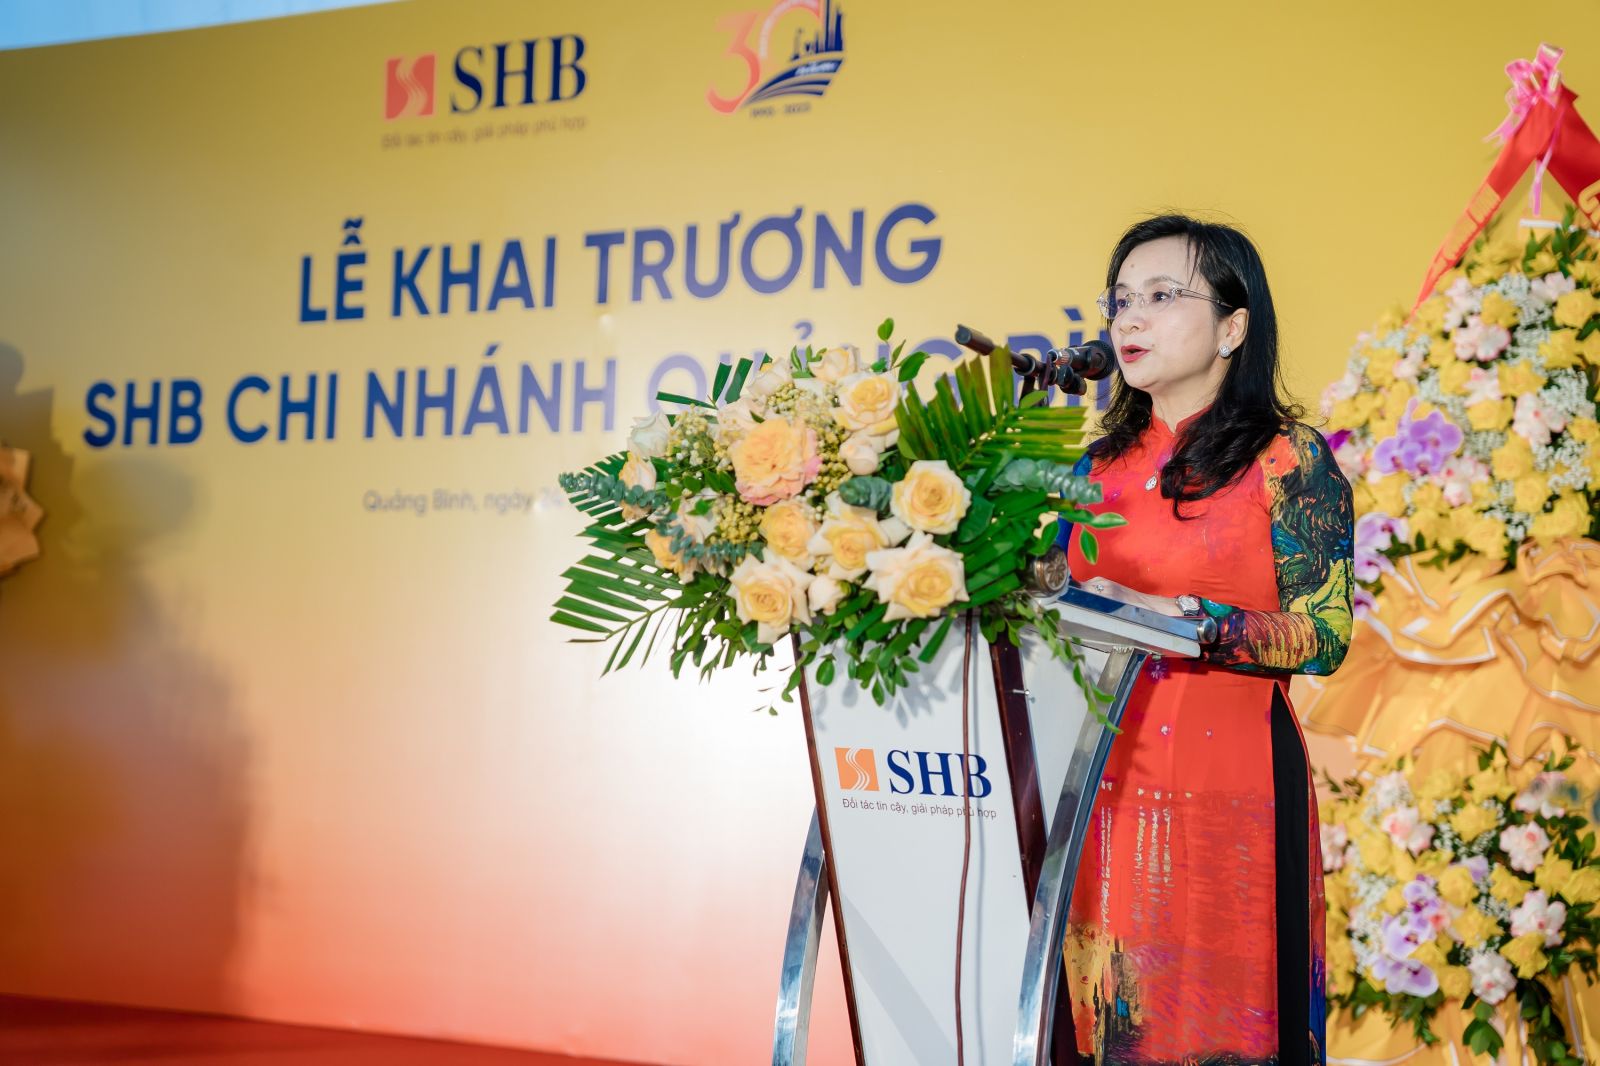 Phát biểu tại Lễ khai trương, Tổng Giám đốc Ngô Thu Hà nhấn mạnh SHB Quảng Bình sẽ hoạt động an toàn, hiệu quả, phát triển vững mạnh đóng góp vào sự phát triển kinh tế xã hội của tỉnh nói riêng và cả nước nói chung